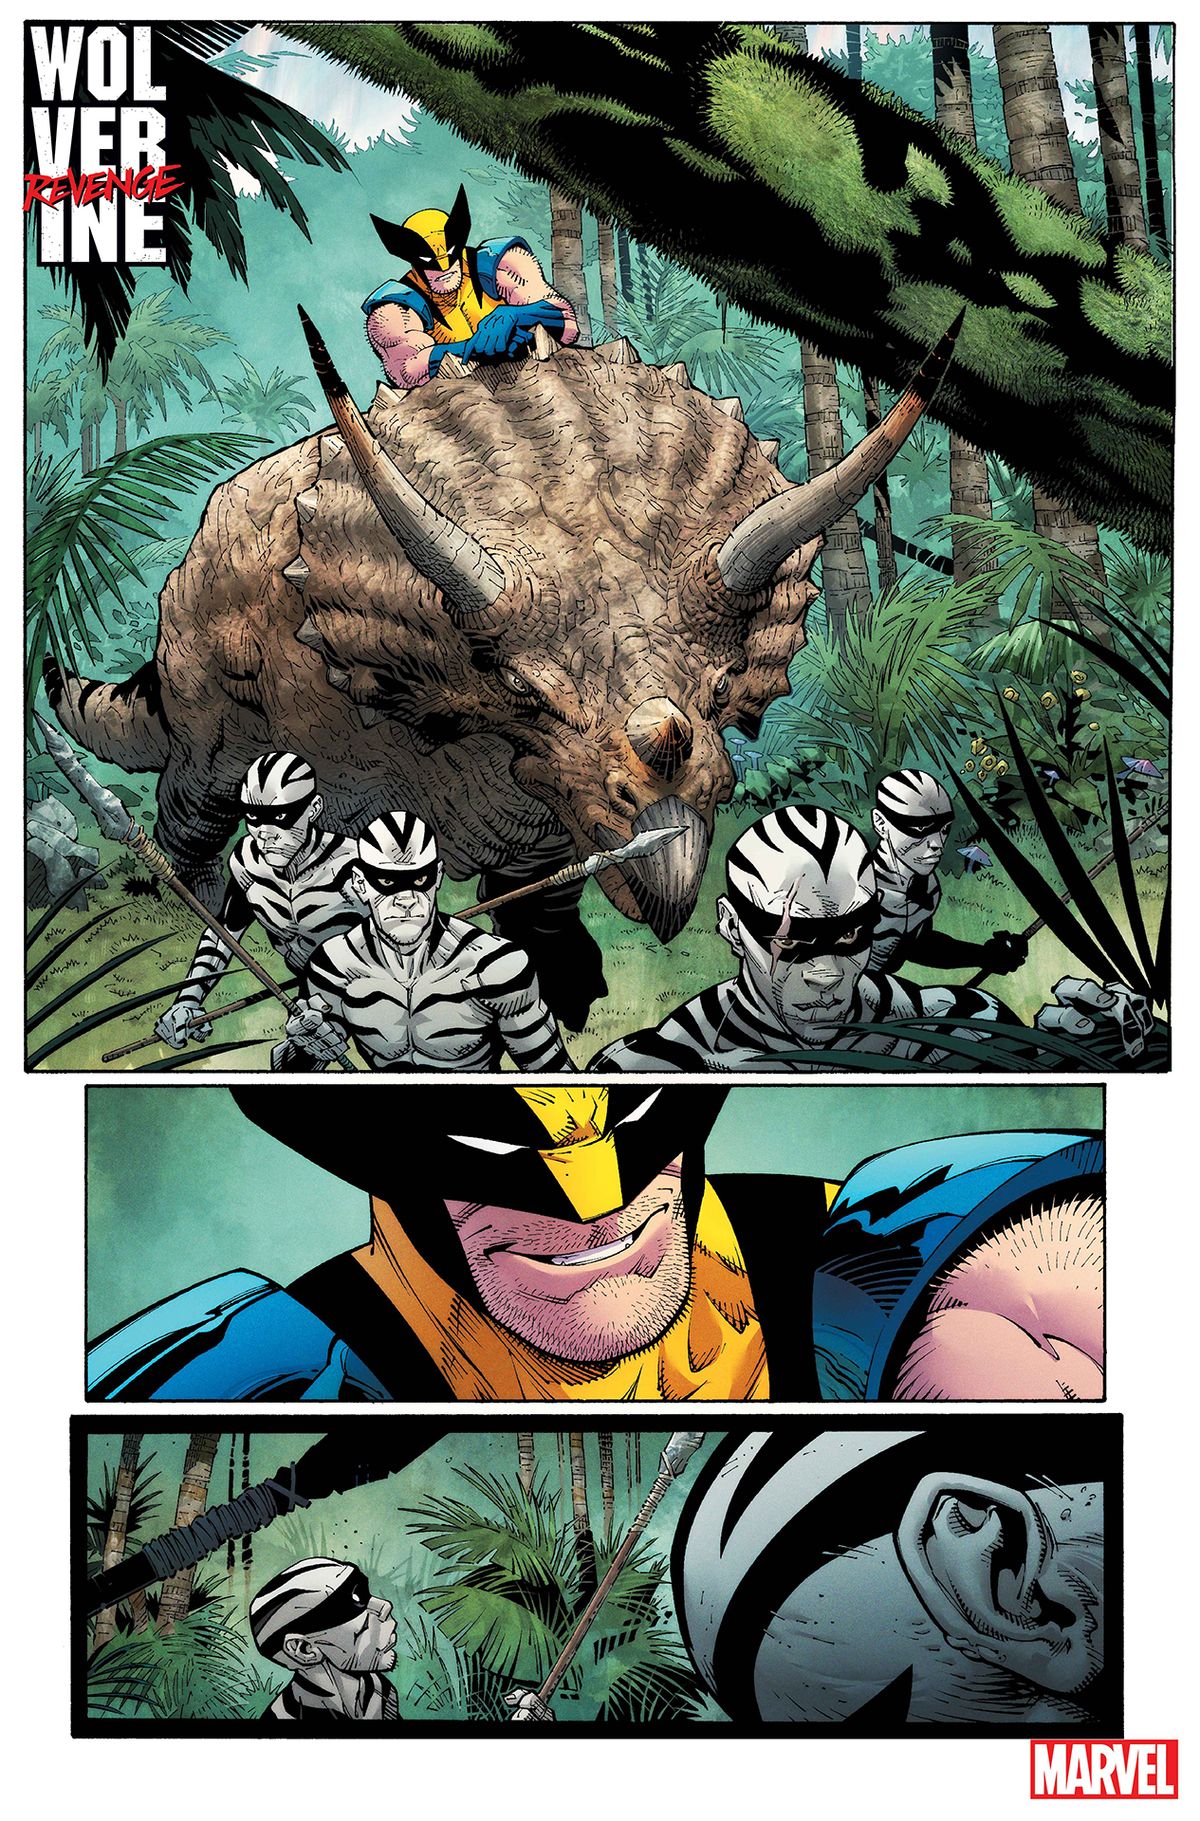 Uma das páginas de "Wolverine Revenge", mostrando Wolverine montado em cima de um dinossauro em uma cena de ação, correndo na selva em meio a selvagens e lutando contra outro dinossauro